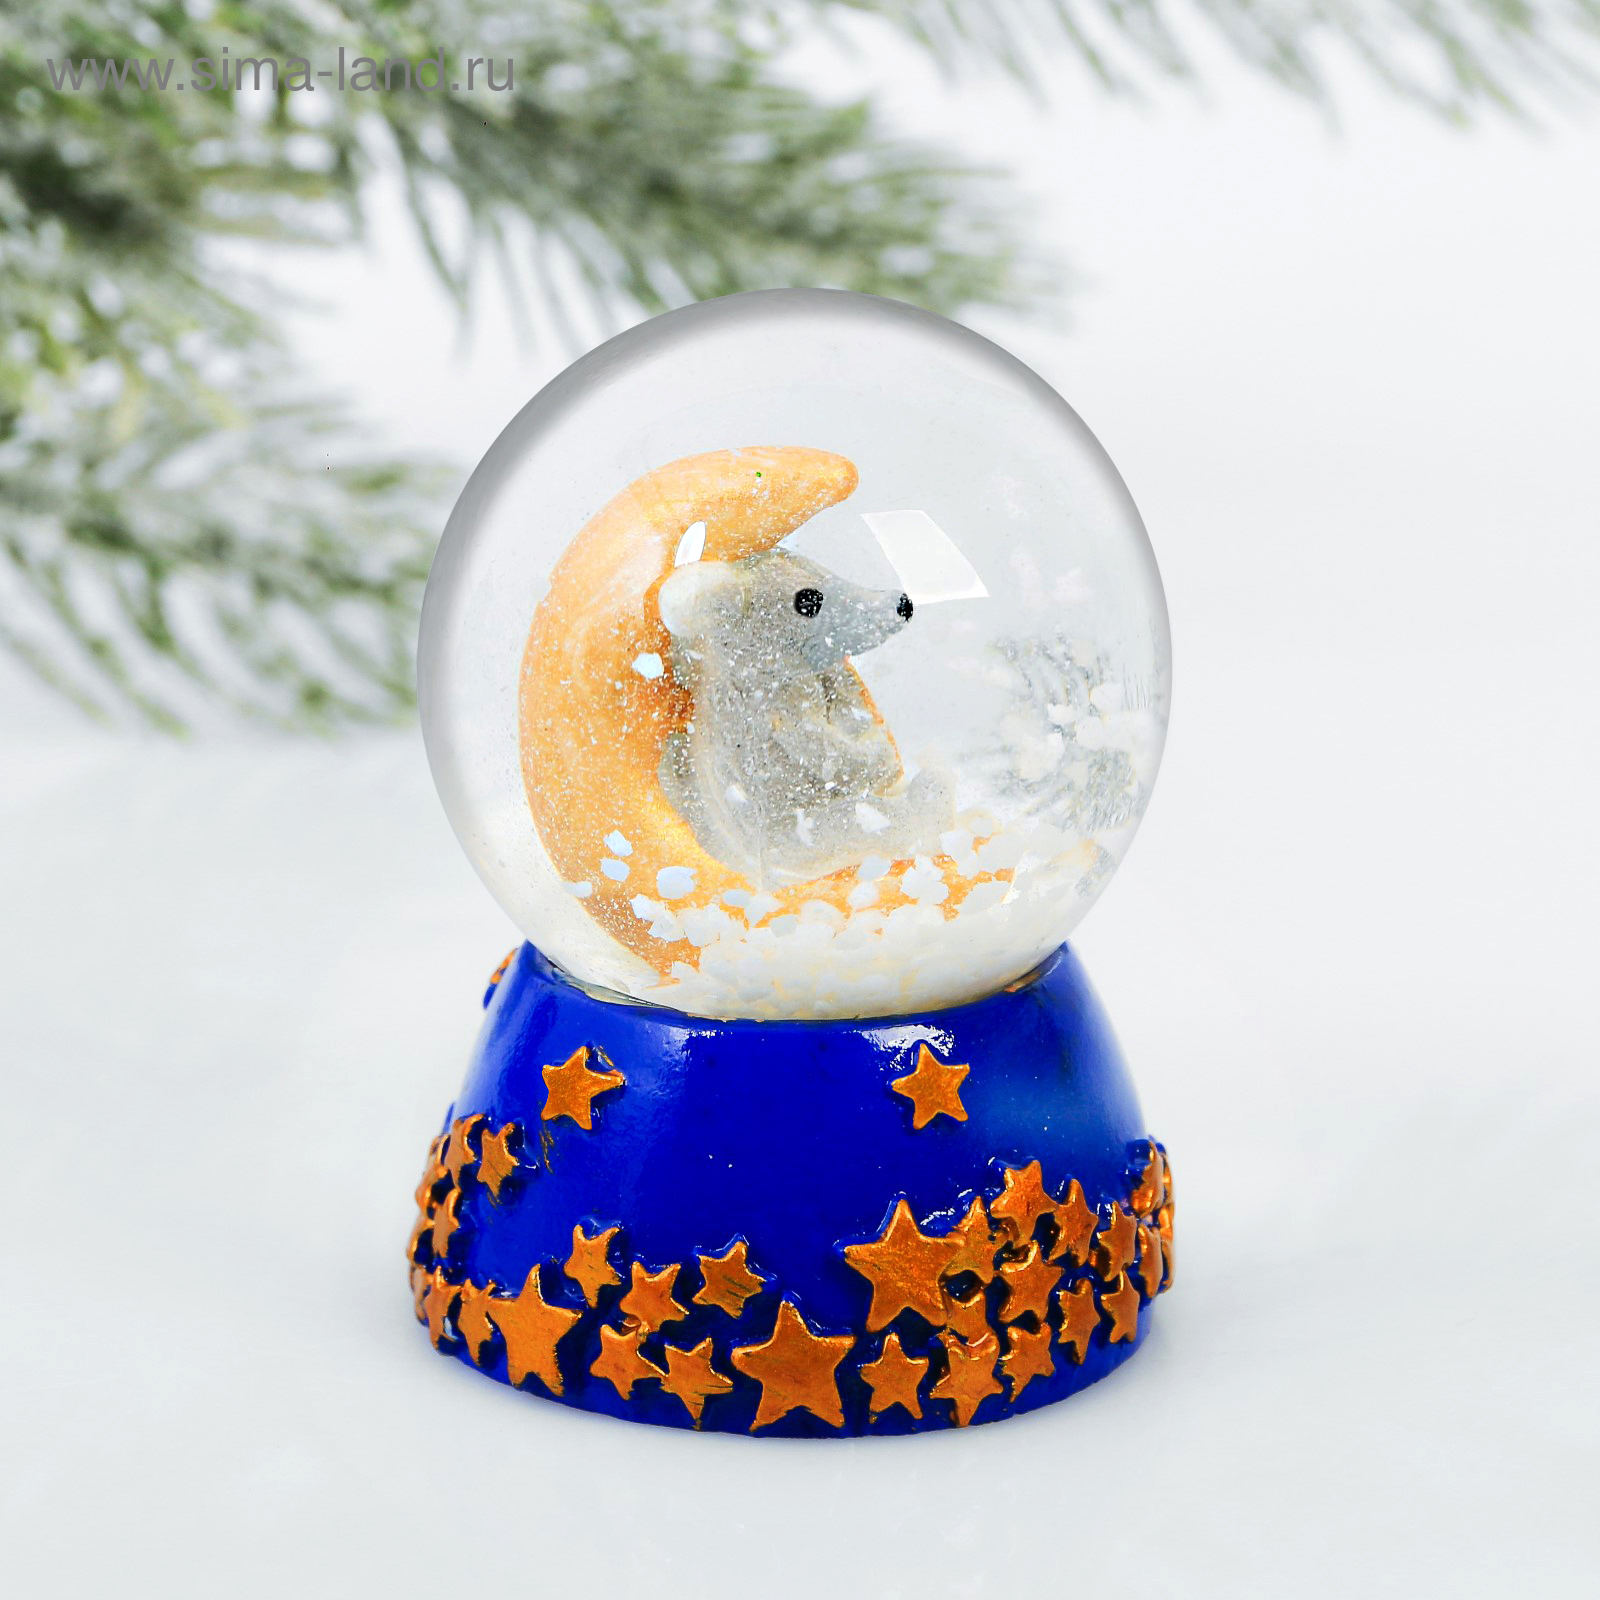 Новогодние сувениры снежный шар